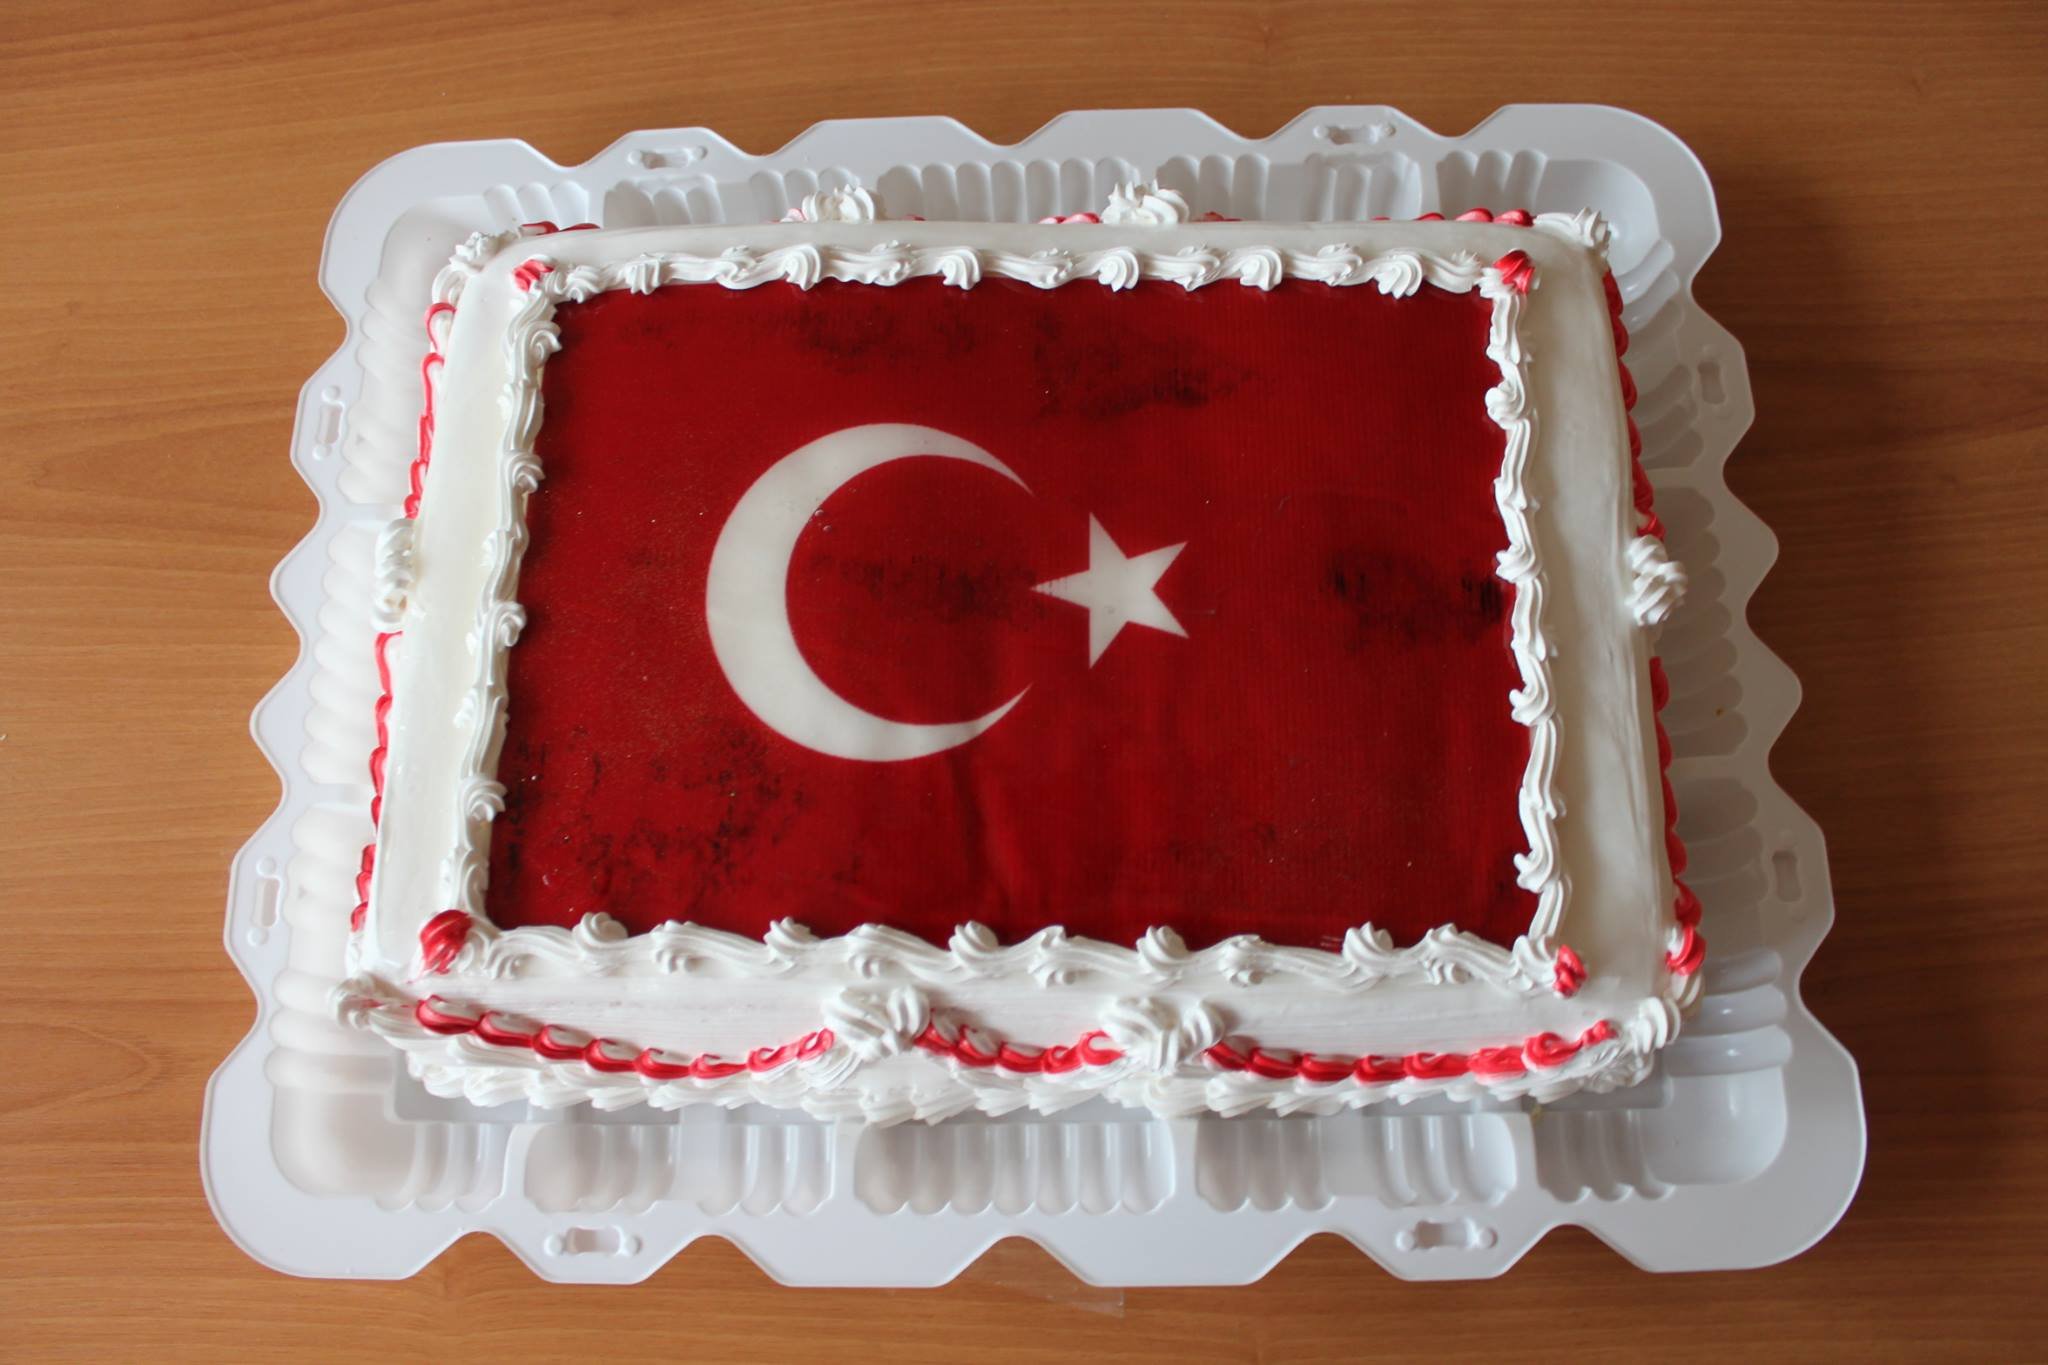 Поздравления турецком языке рождения. С днём рождения мужчине на турецком. С днём рождения на турецком языке мужчине. С дне рождения мужчине на турецком. Поздравить с днём рождения на турецком языке.